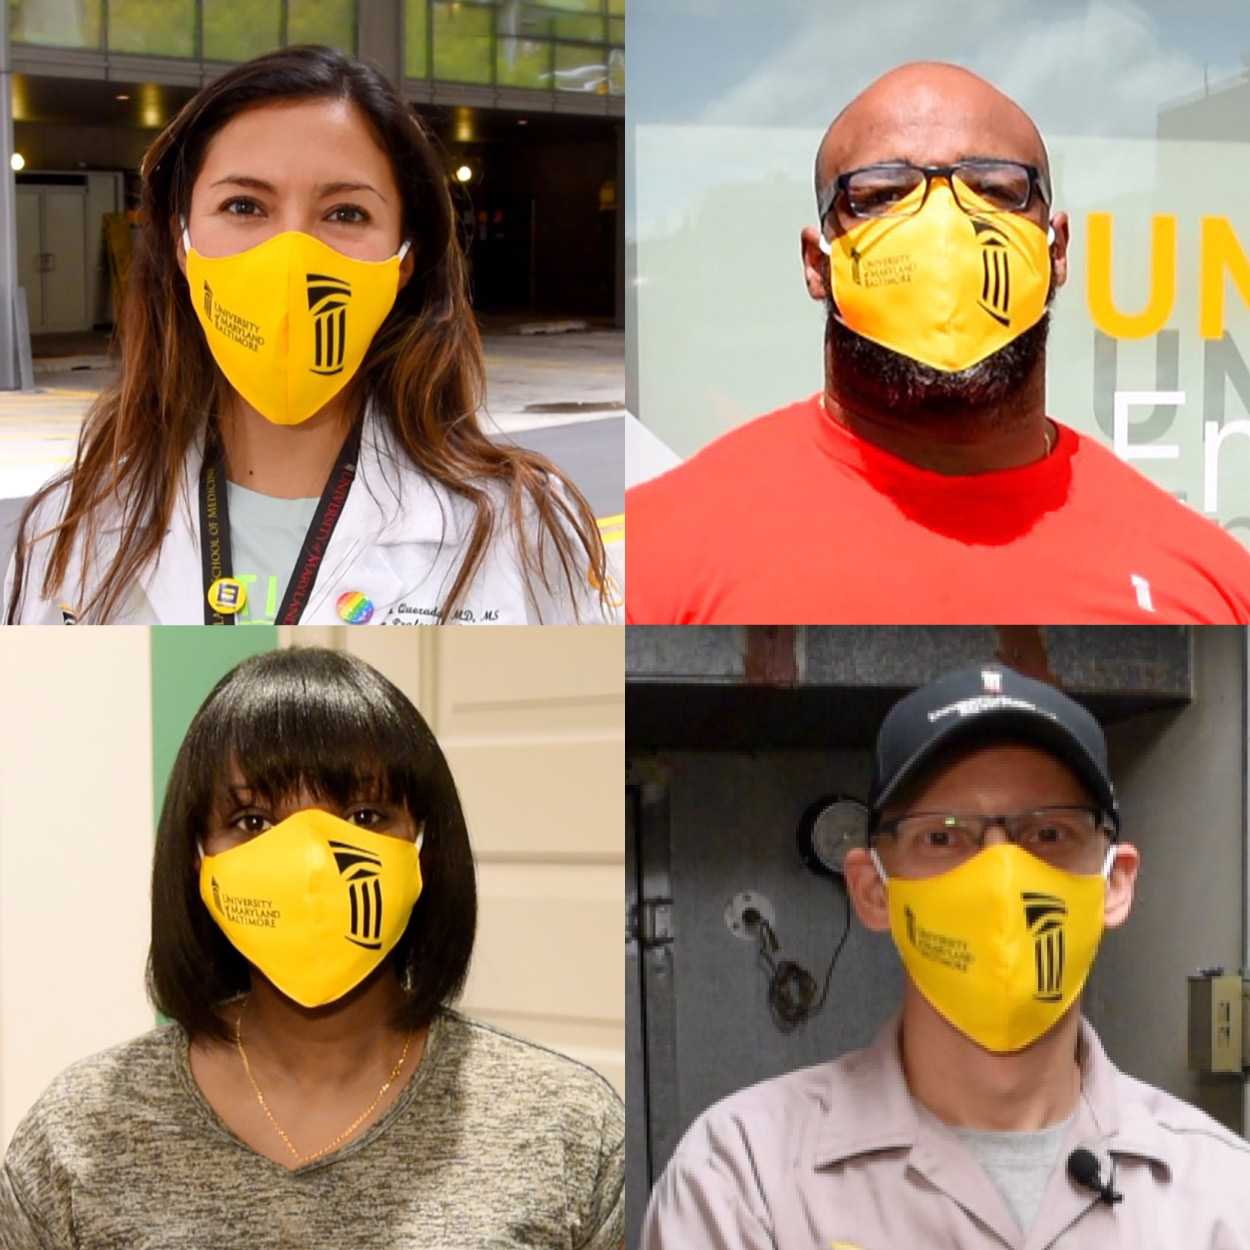 4 people wearing masks